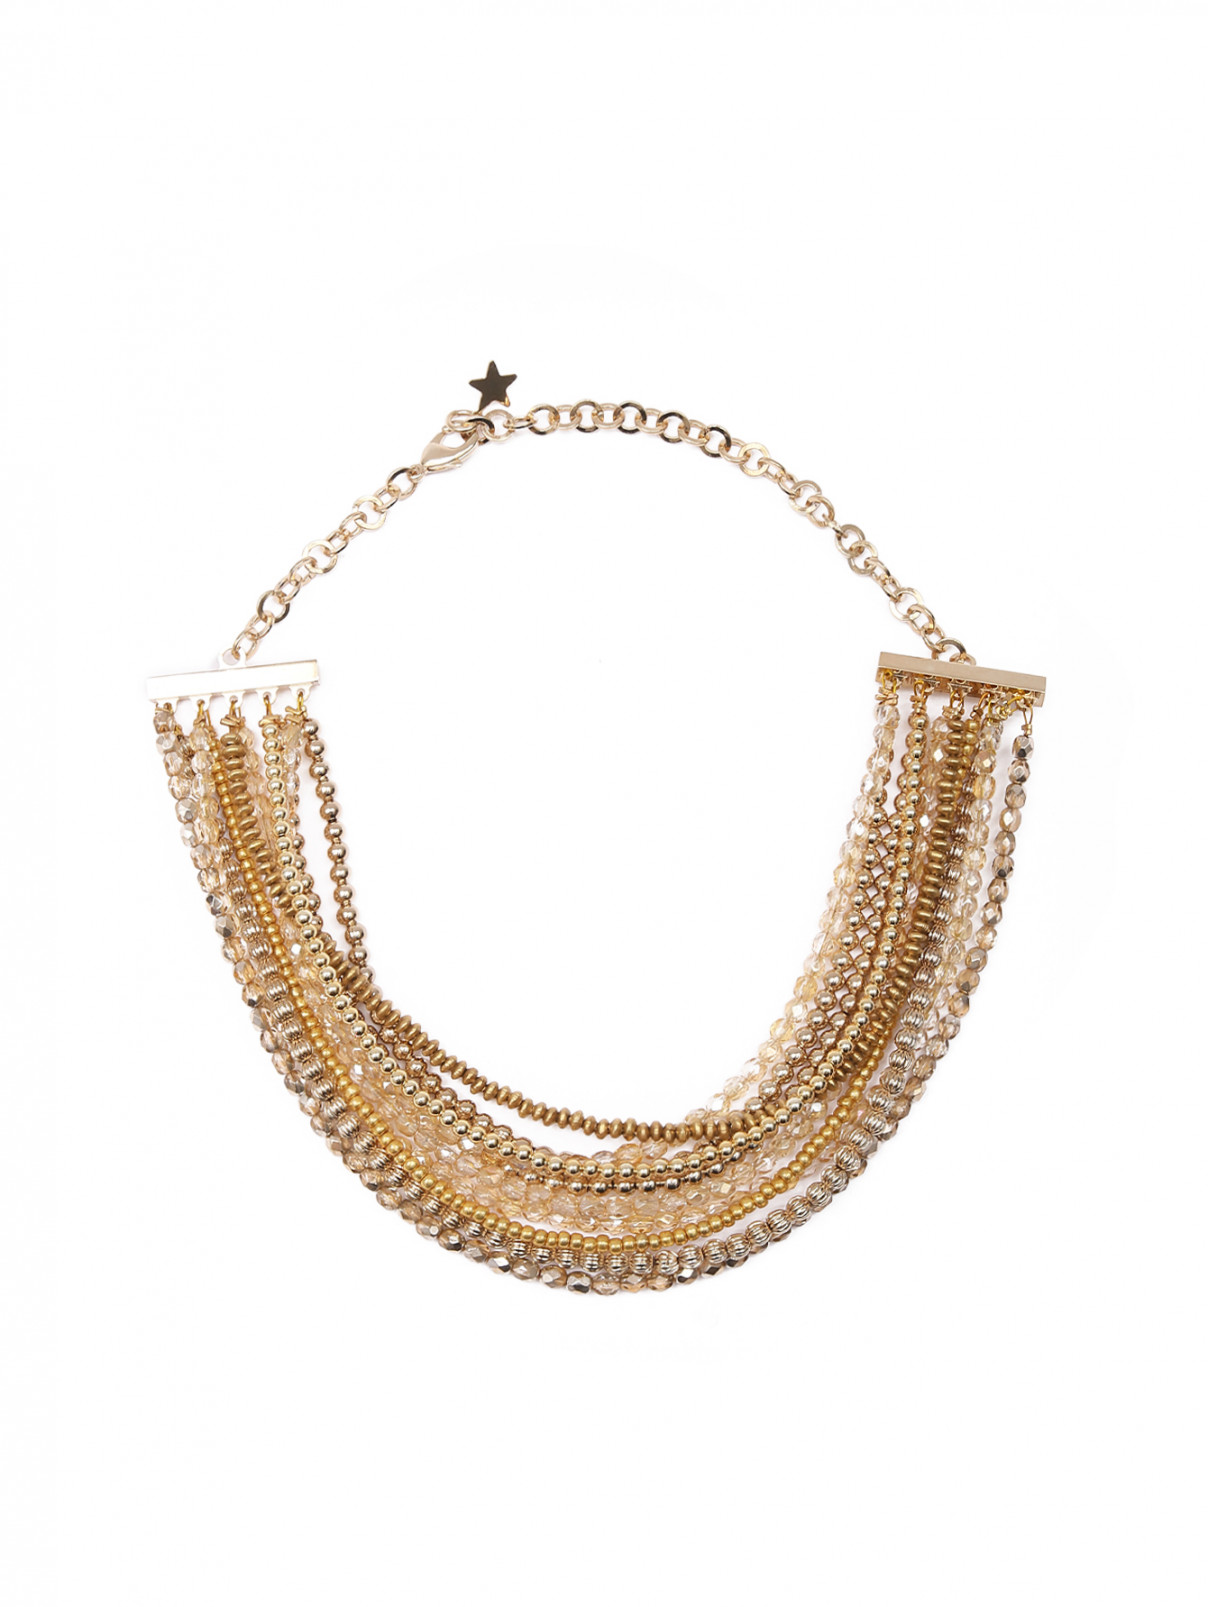 Ожерелье из металла с кристаллами Lorena Antoniazzi  –  Общий вид  – Цвет:  Золотой